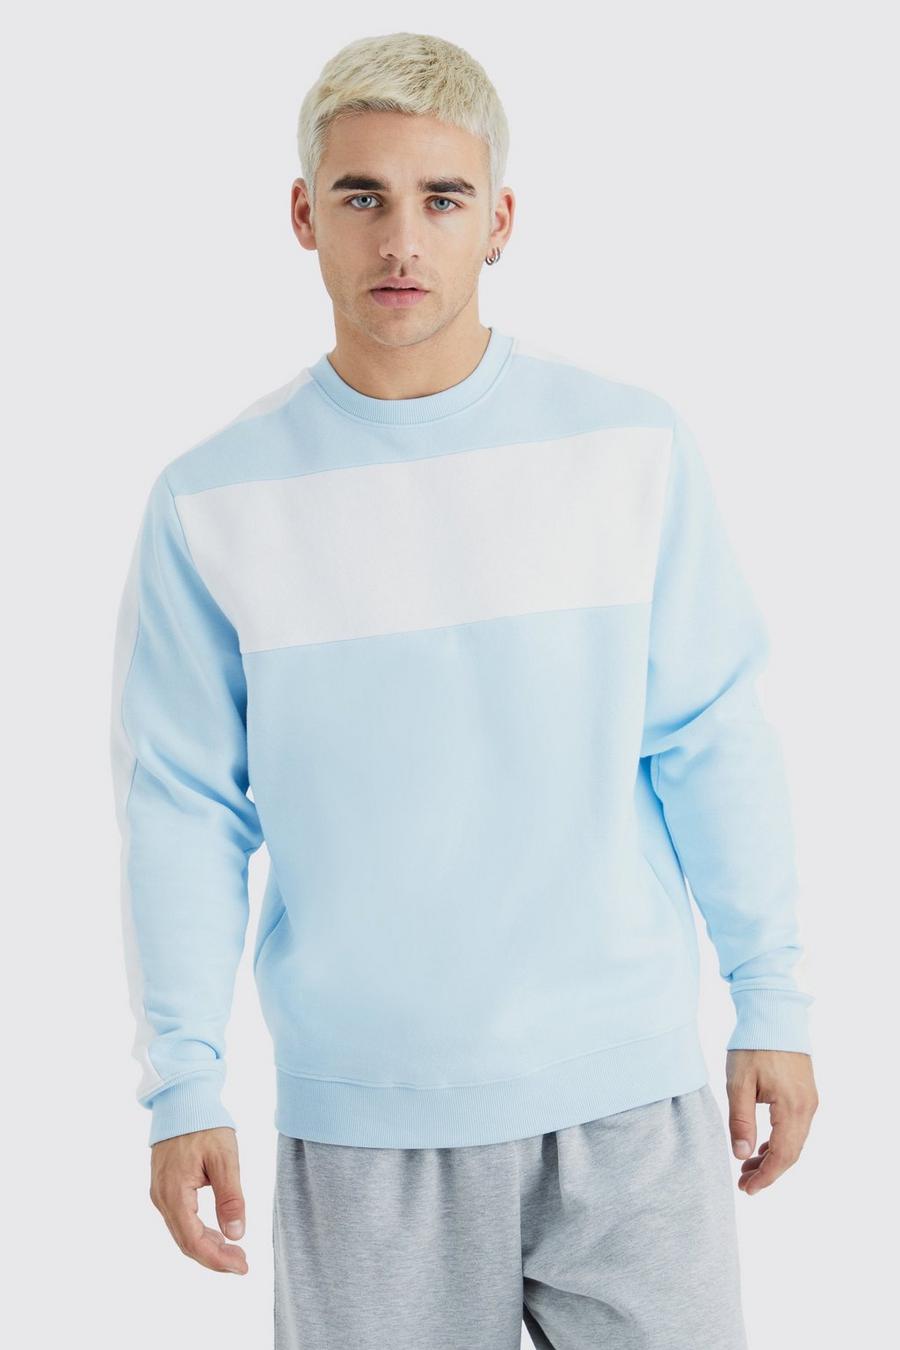 Colorblock Sweatshirt mit Streifen, Light blue